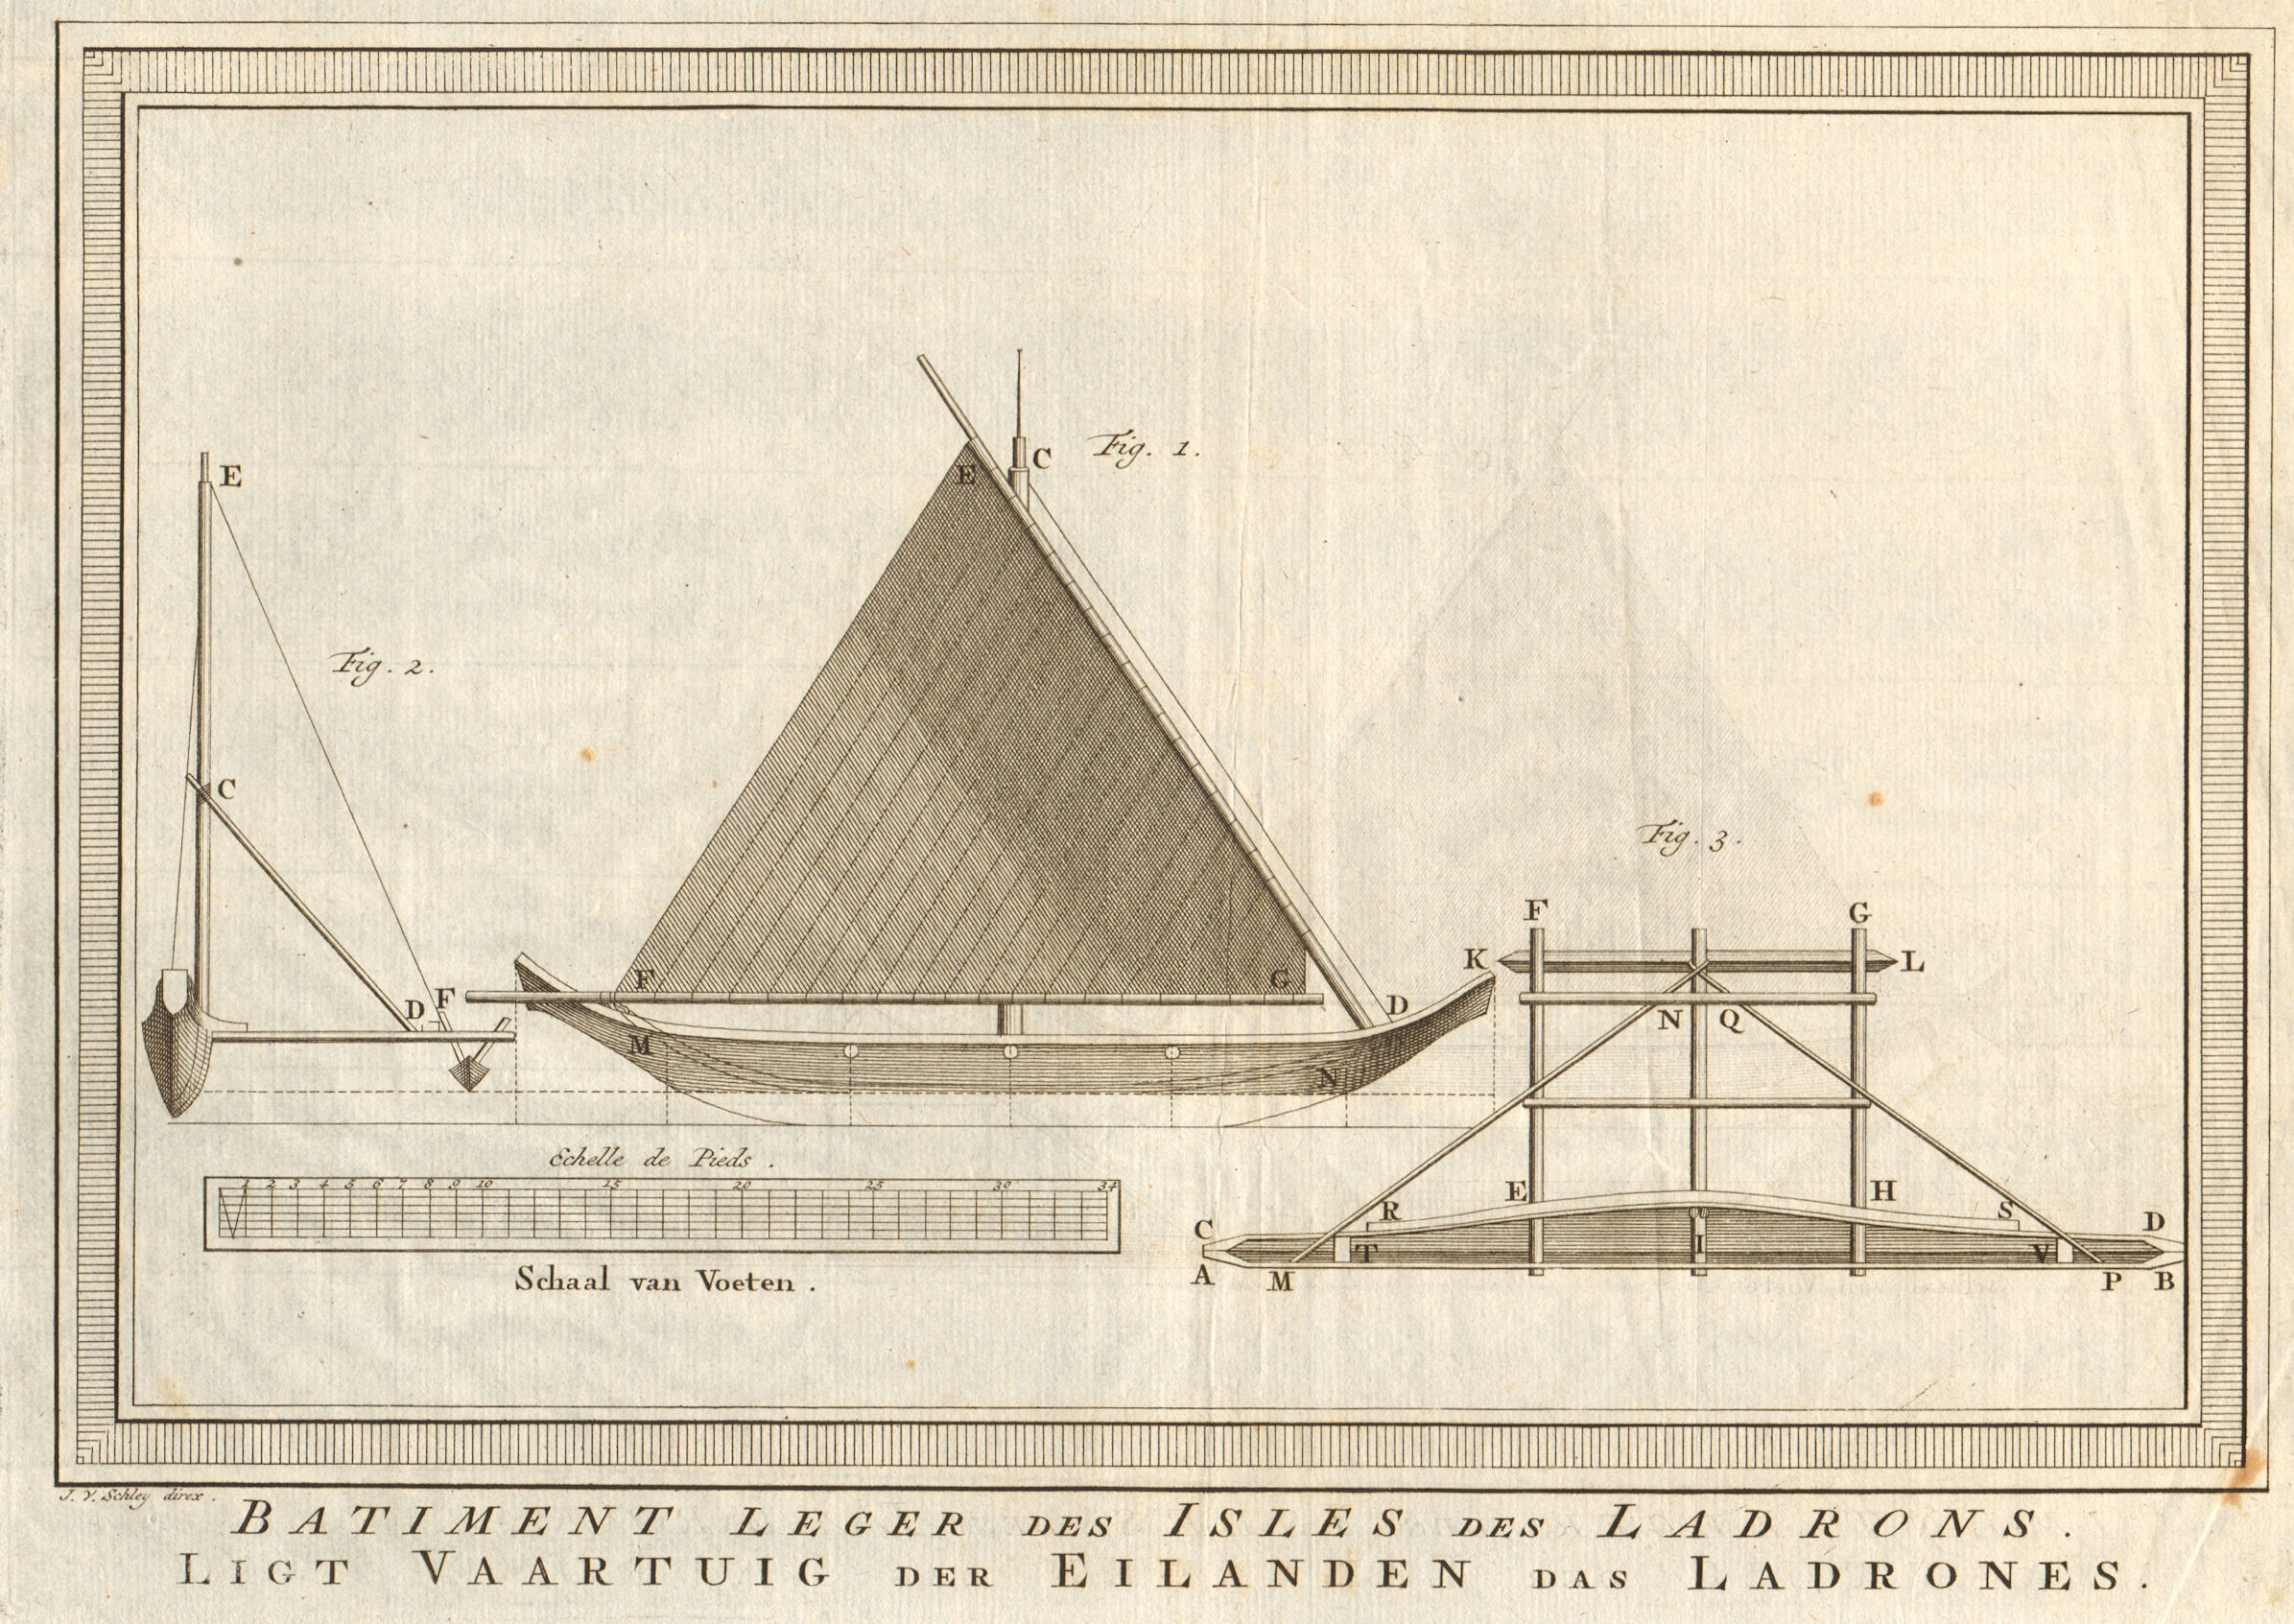 Batiment leger des Isles des Ladrons. Proa sail boat Mariana islands SCHLEY 1757